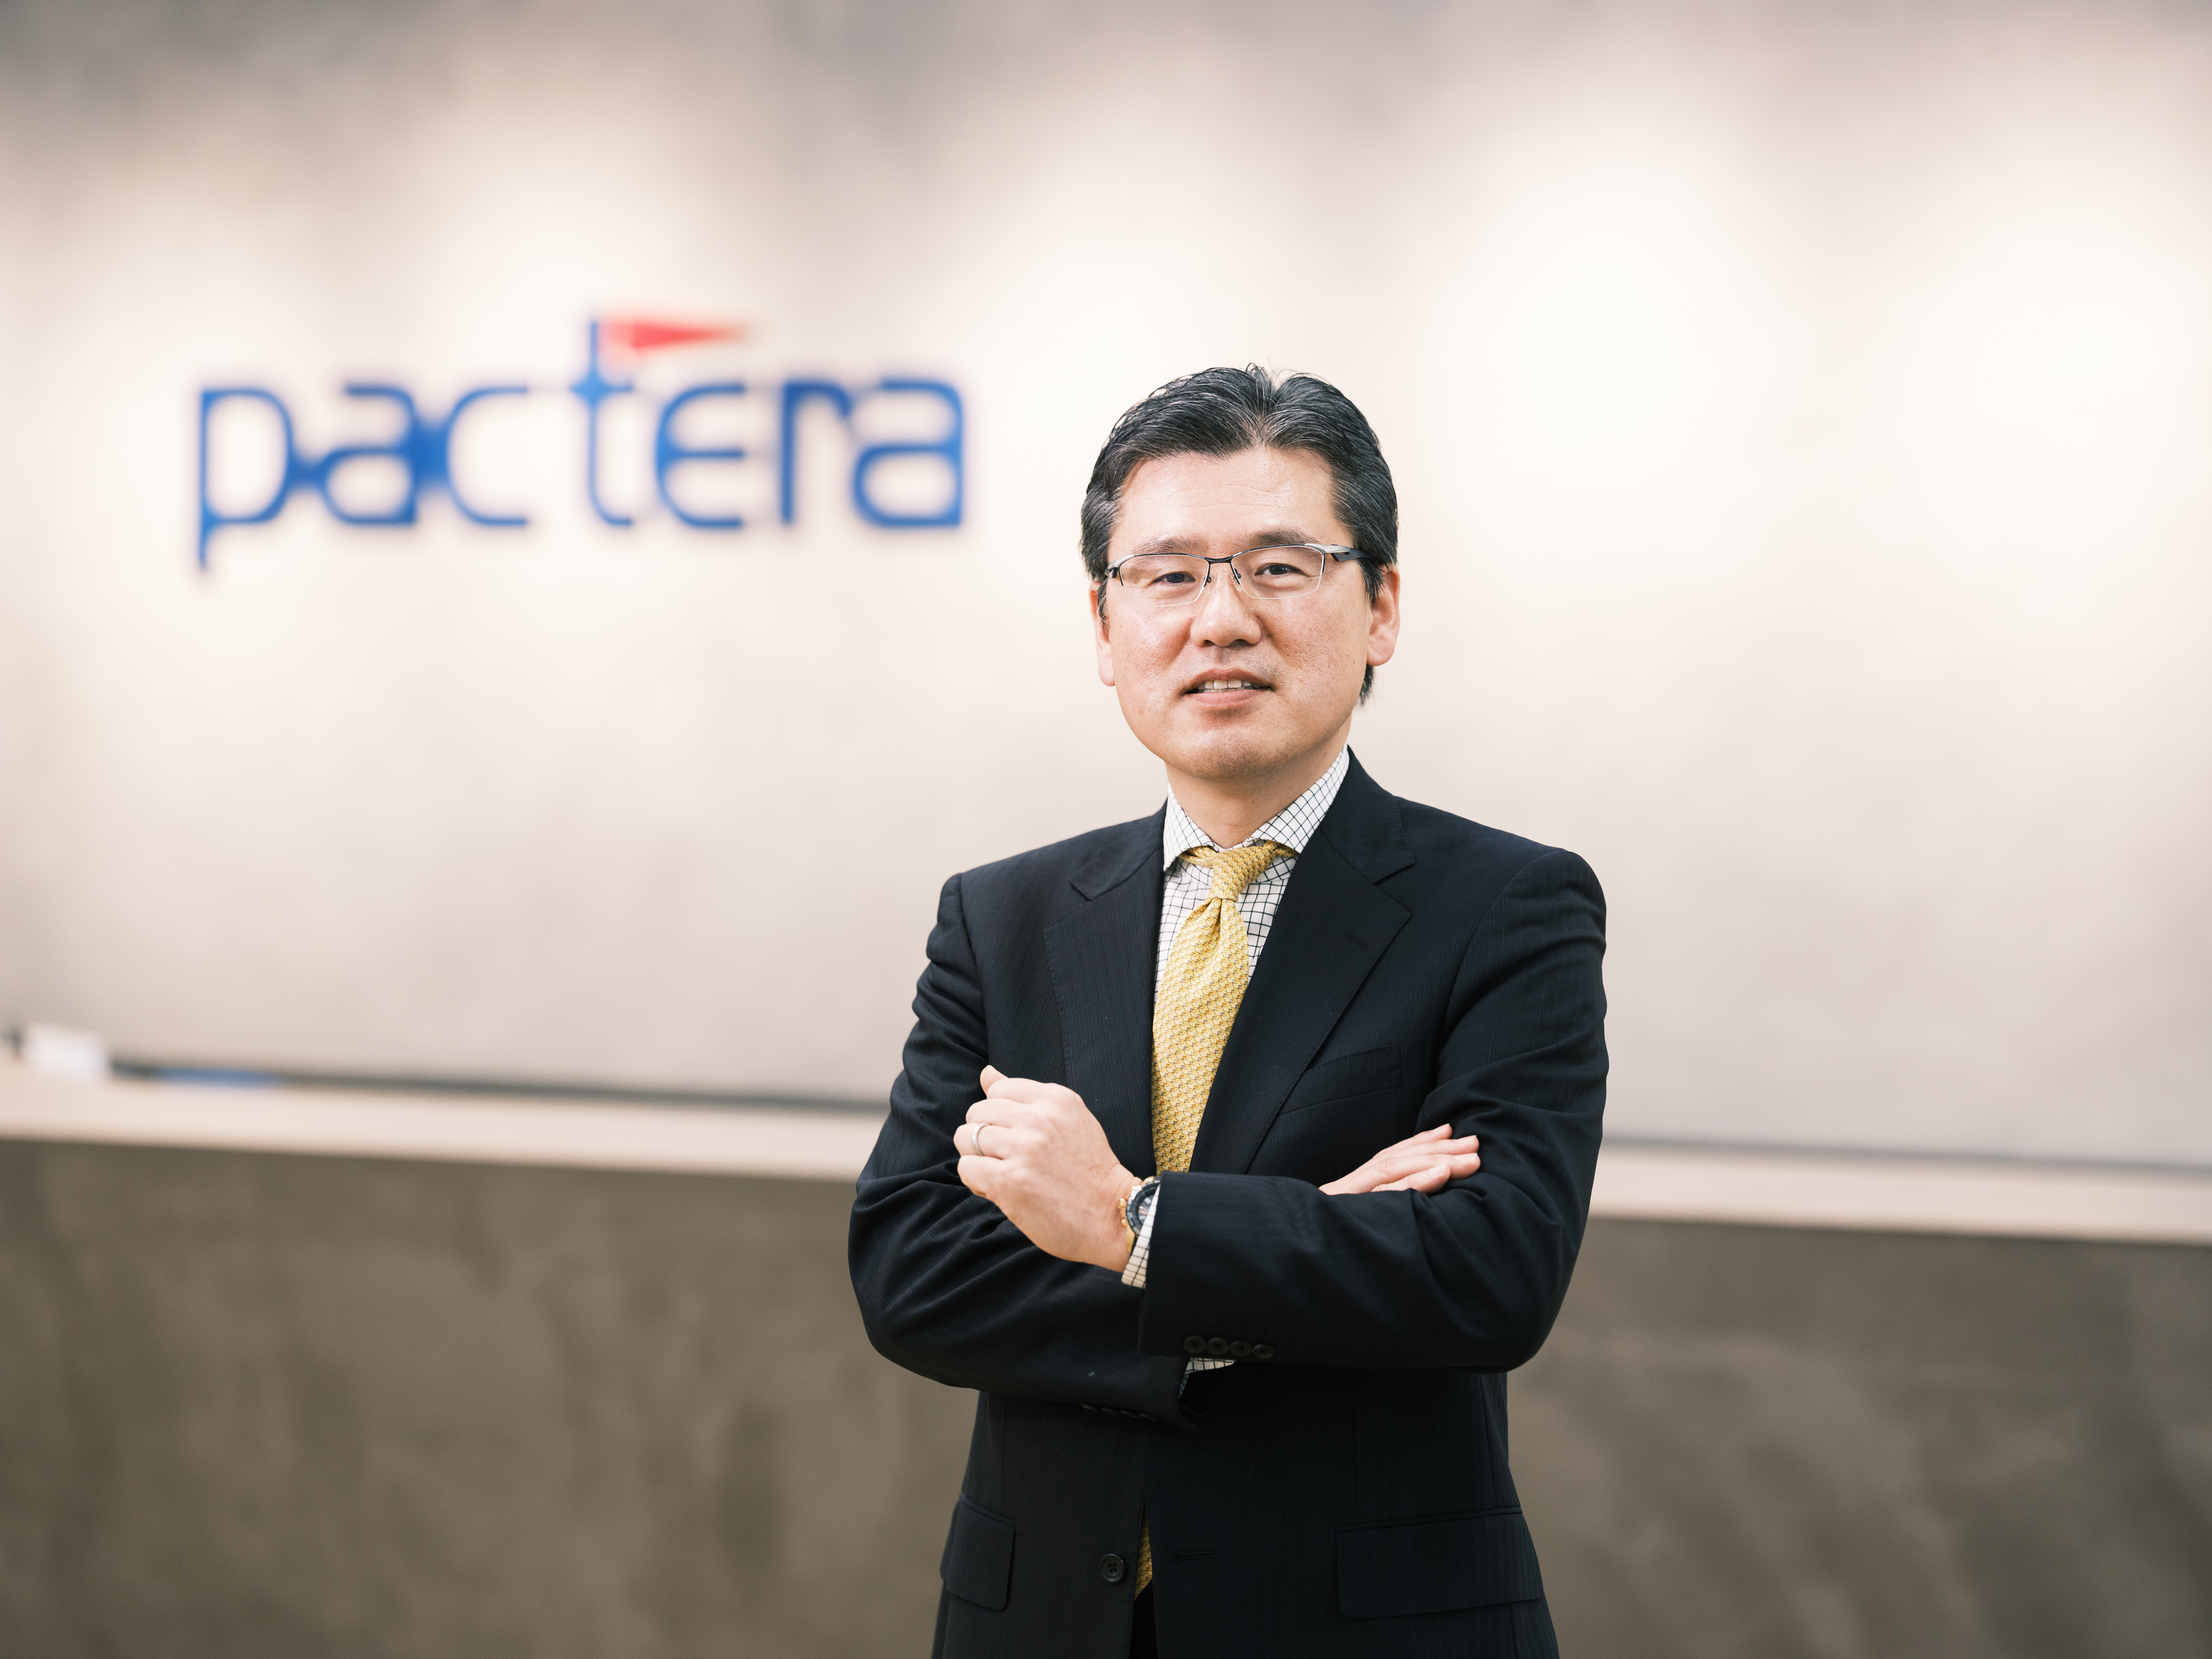 日本法人の代表取締役　小早川泰彦氏
日本向けビジネスを含むパクテラグループのアジアパシフィック事業全体の責任者です。